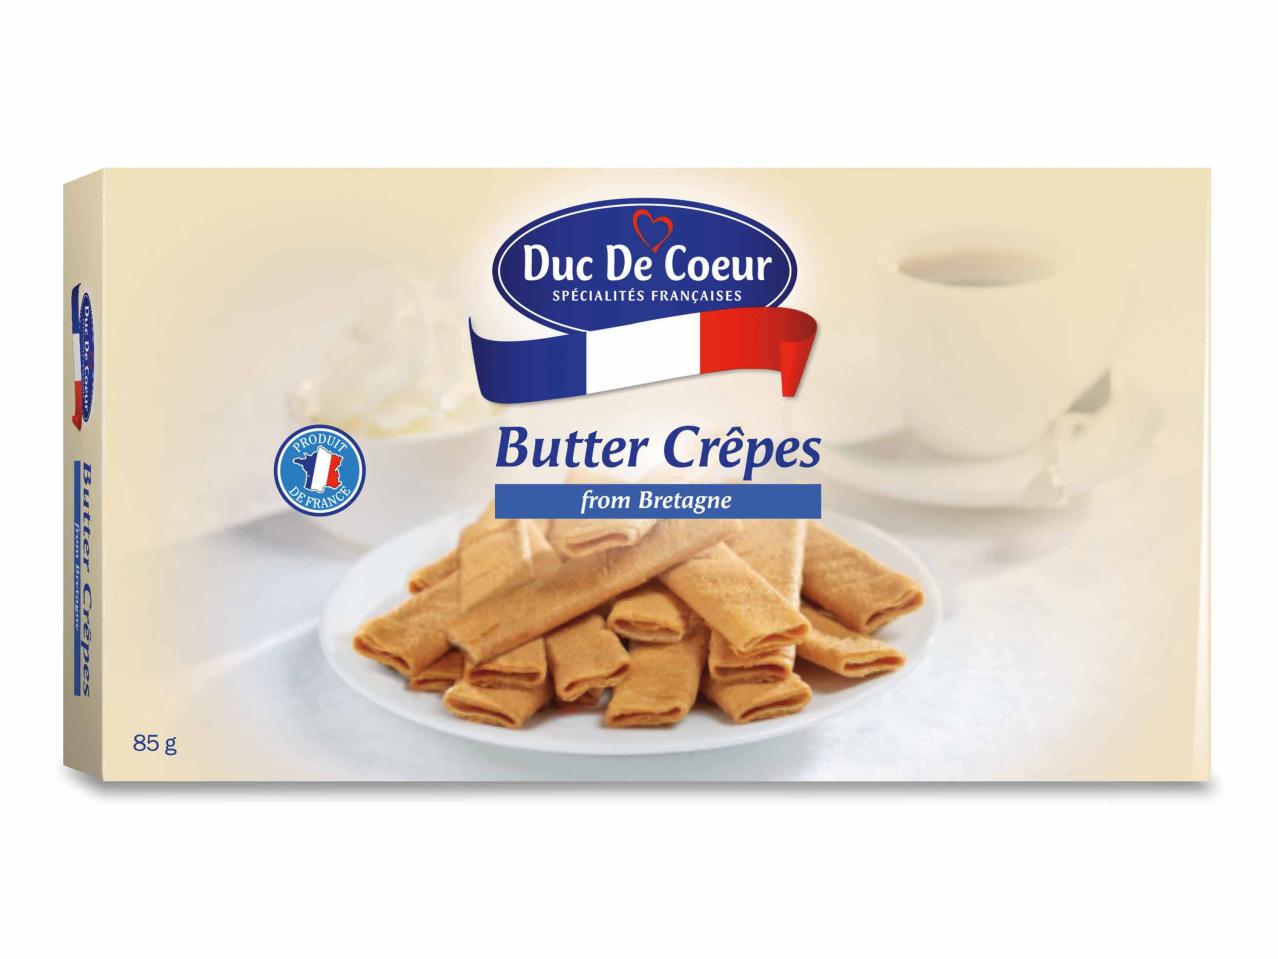 Butter Crêpes